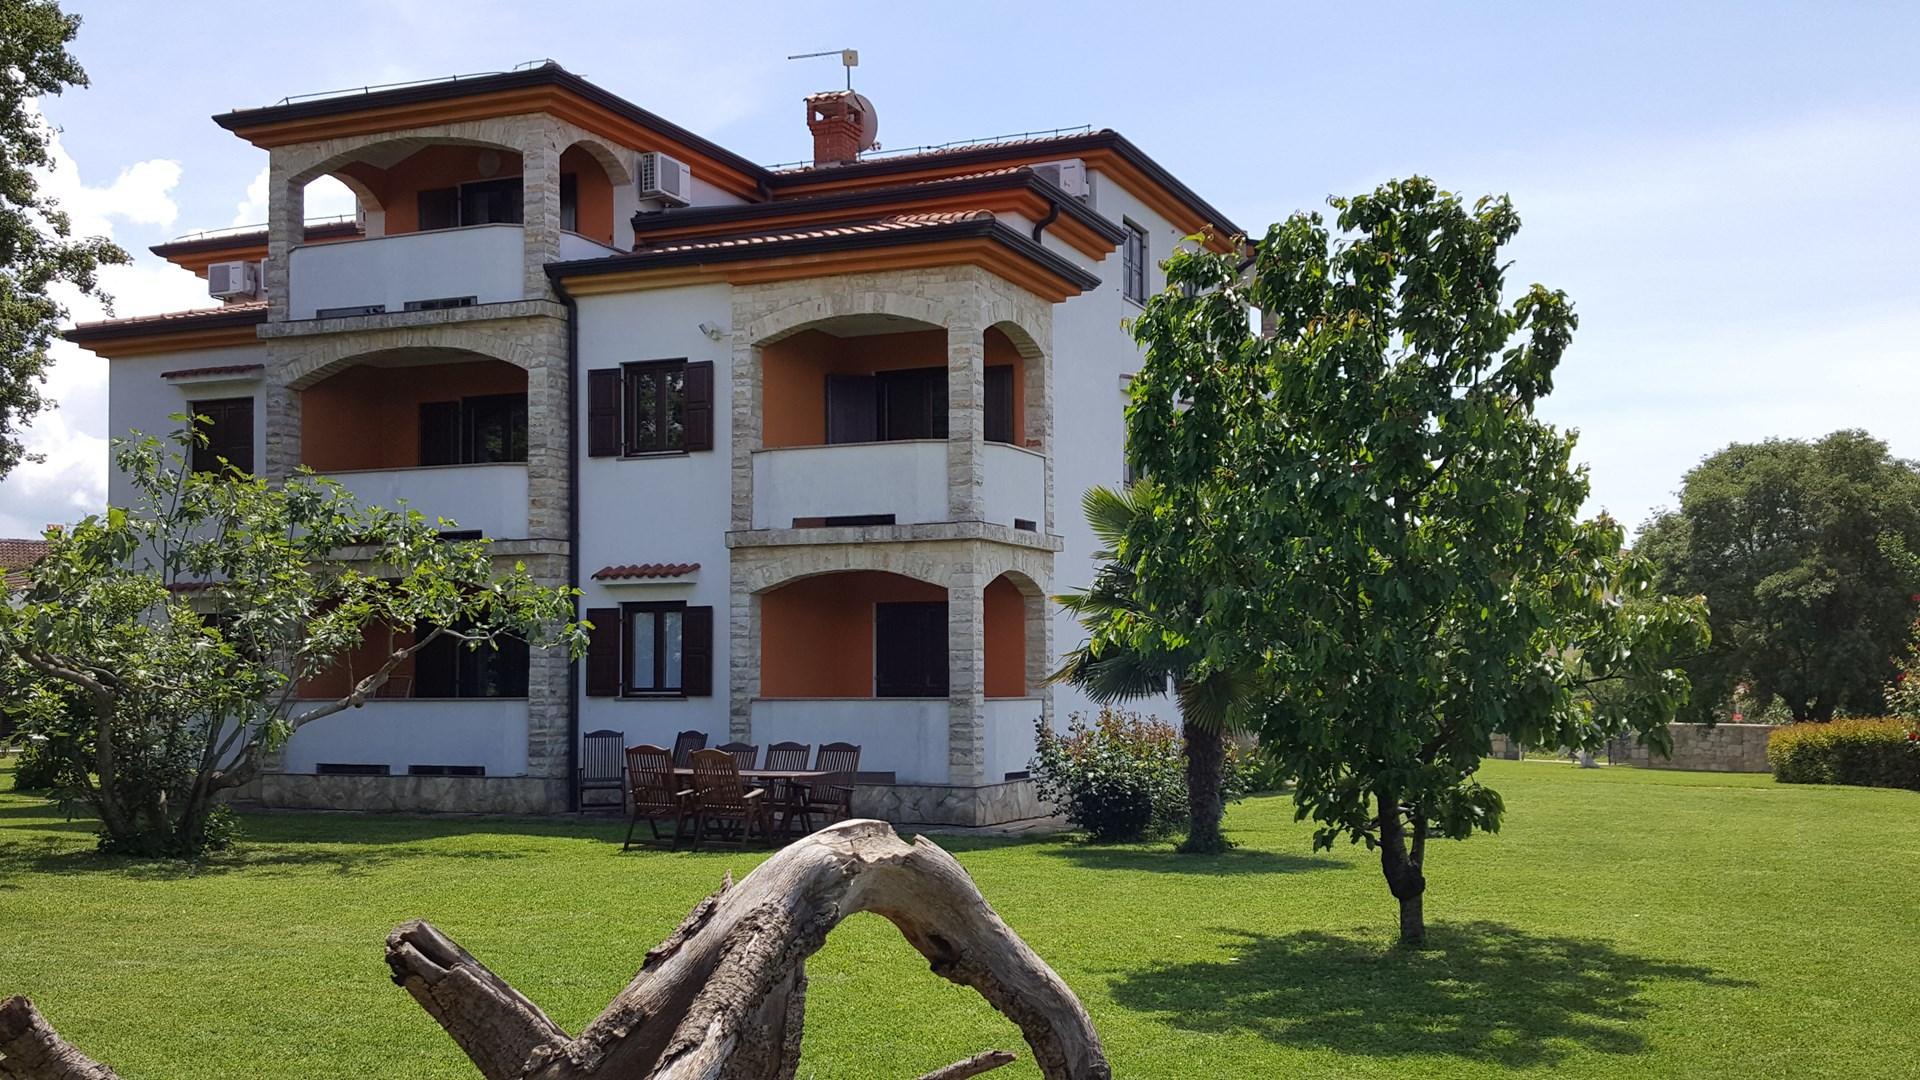 Appartement in Funtana mit Grill Ferienwohnung in Istrien